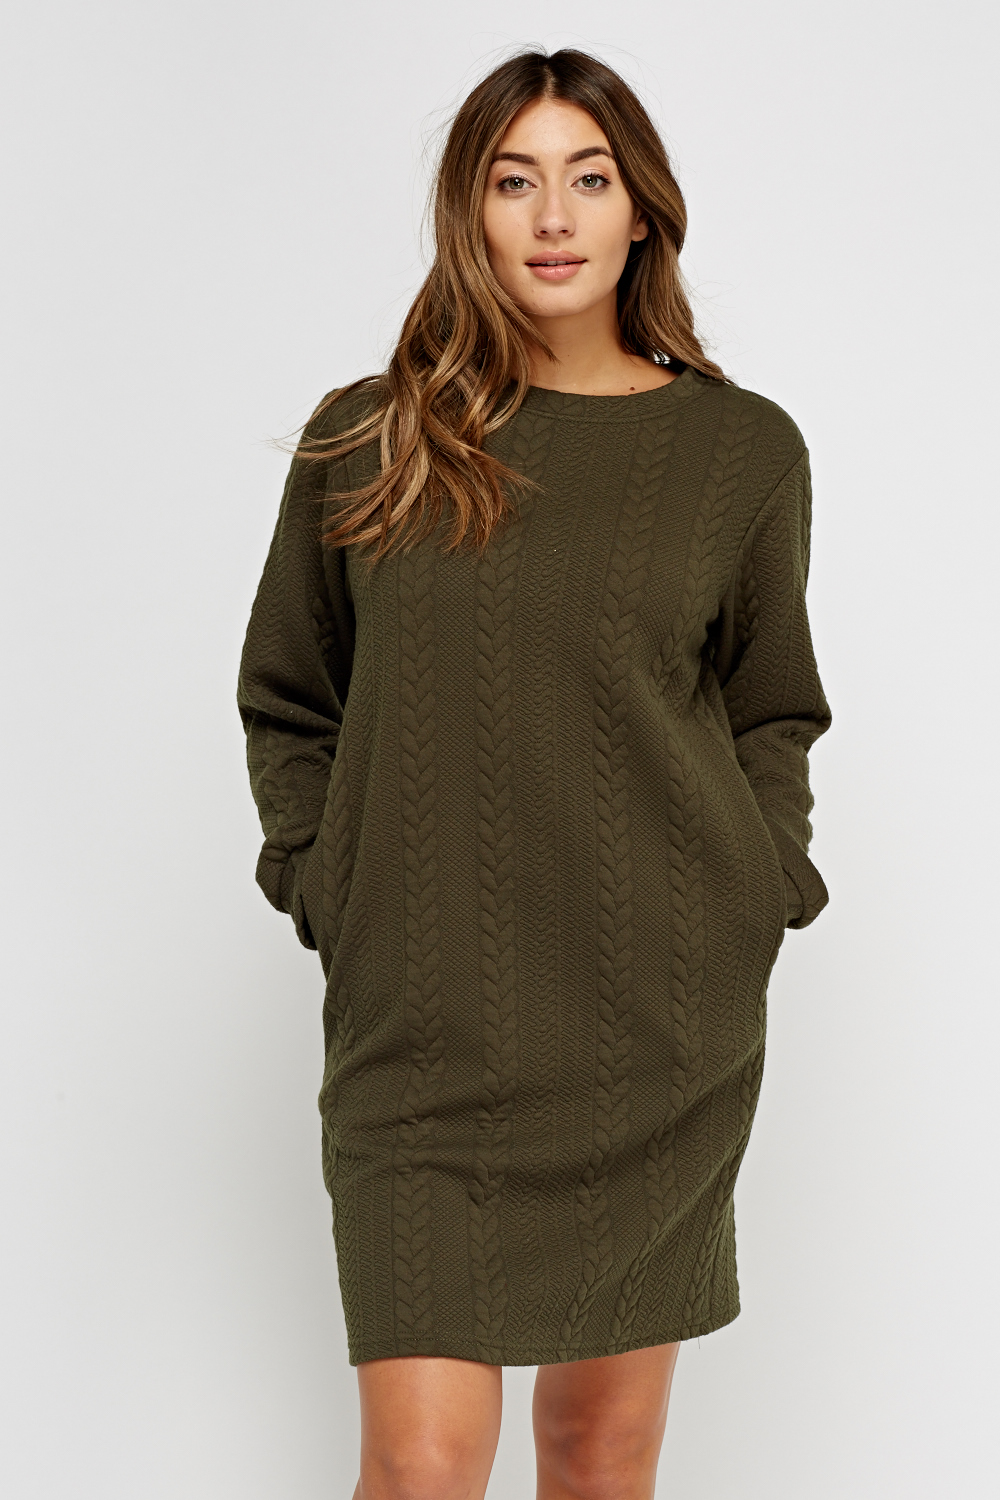 green knitted jumper dress